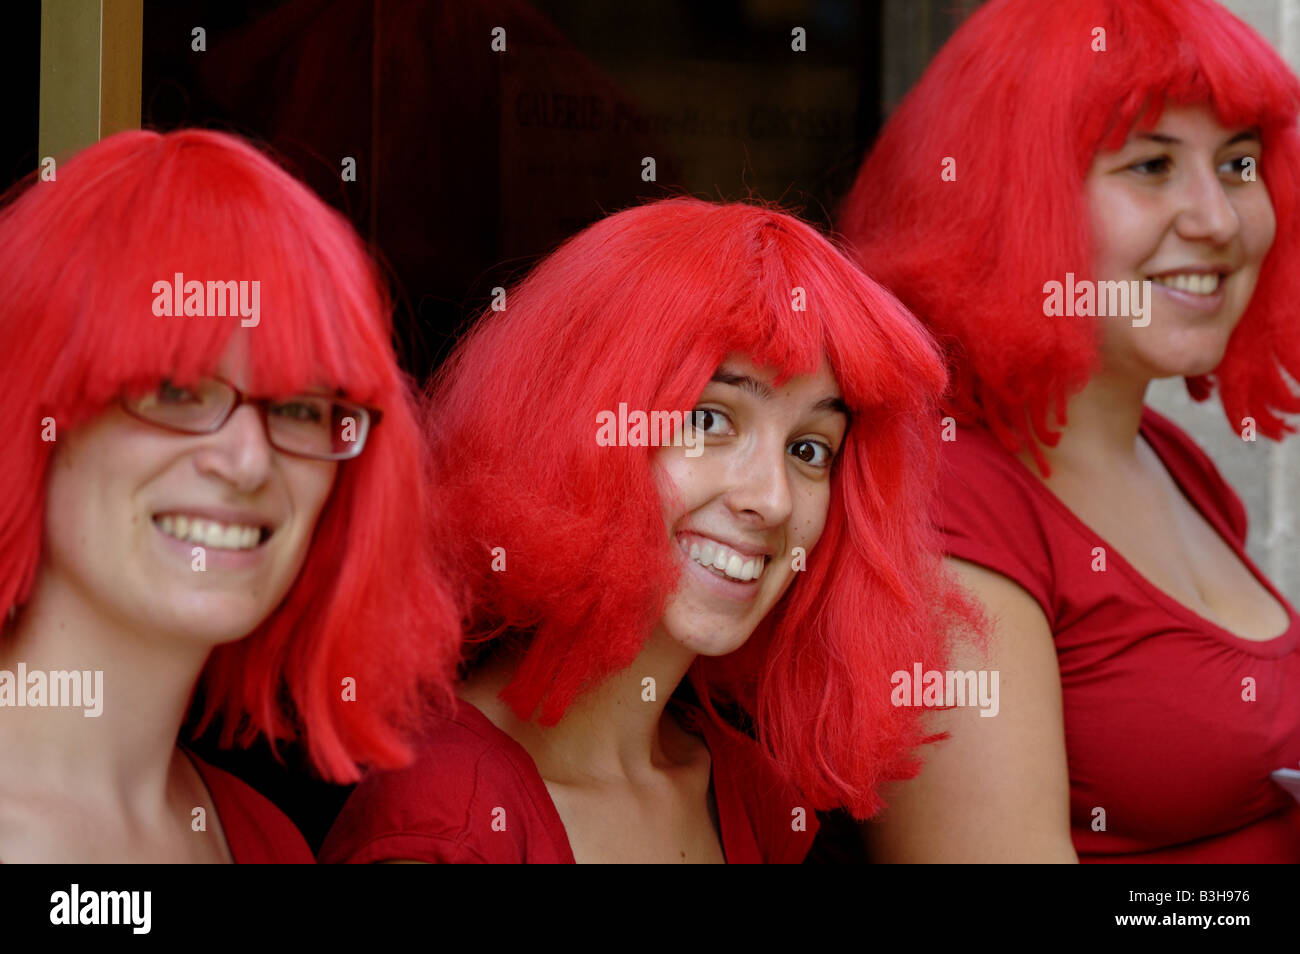 Tres señoritas sonrientes vestidas de rojo en Avignon, Francia. Foto de stock